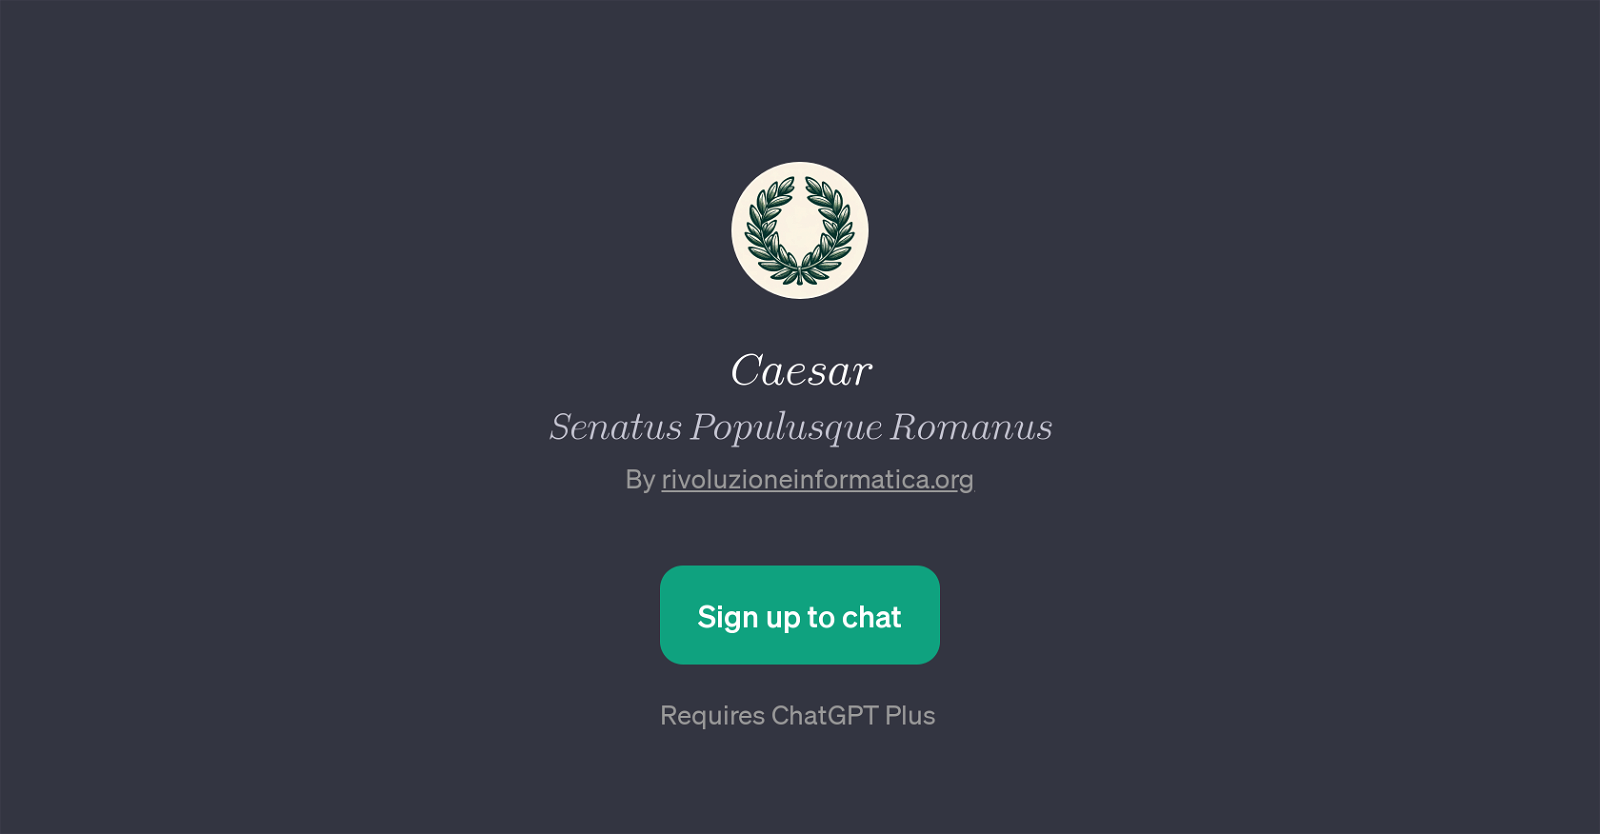 CaesarSenatusPopulusqueRomanus website